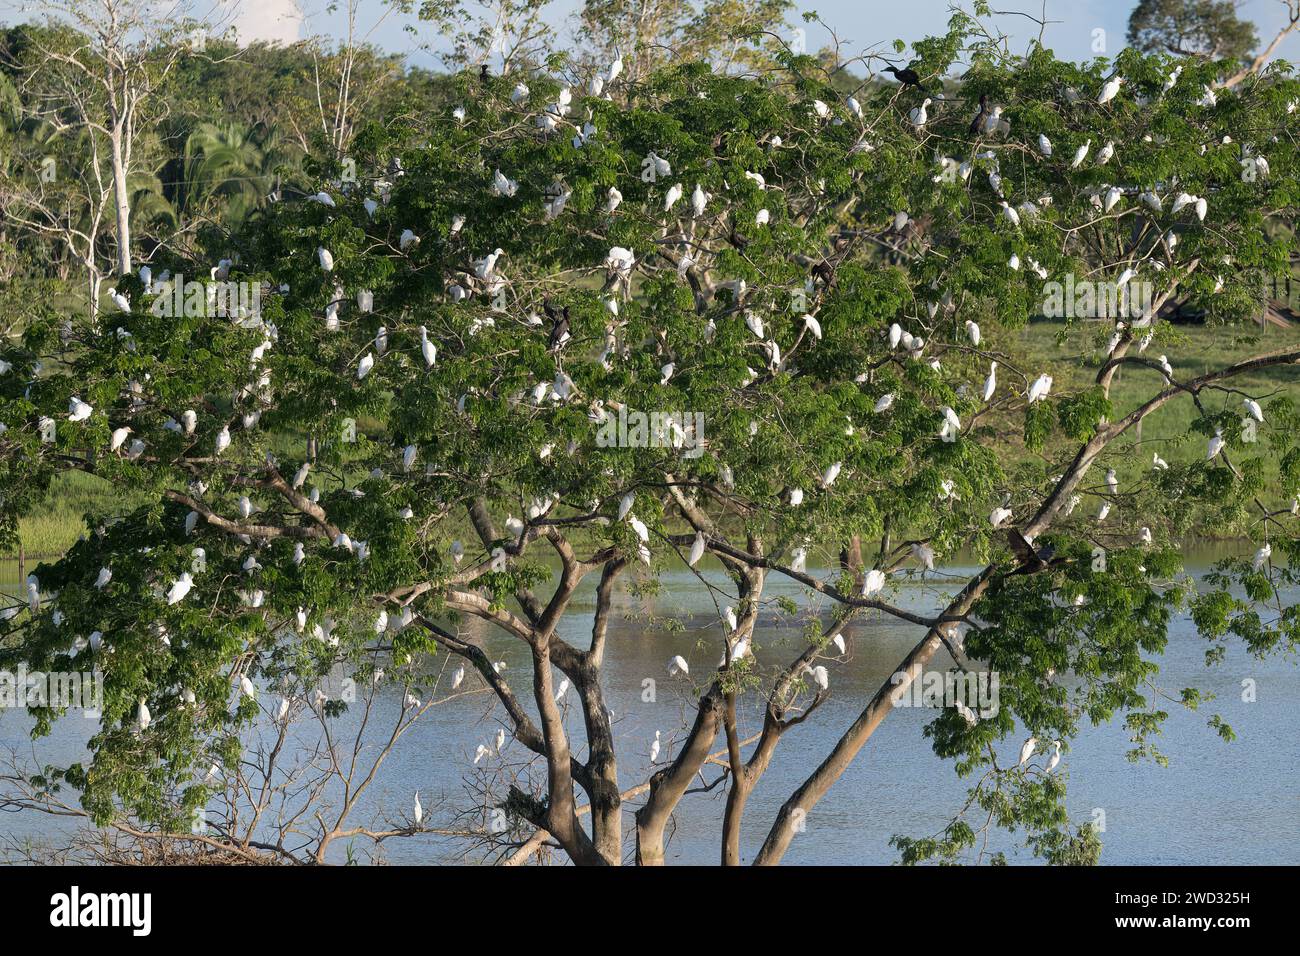 Grets de bovins de l'Ouest, Bubulcus ibis, perché dans un arbre, fin d'après-midi, bassin amazonien, Brésil Banque D'Images